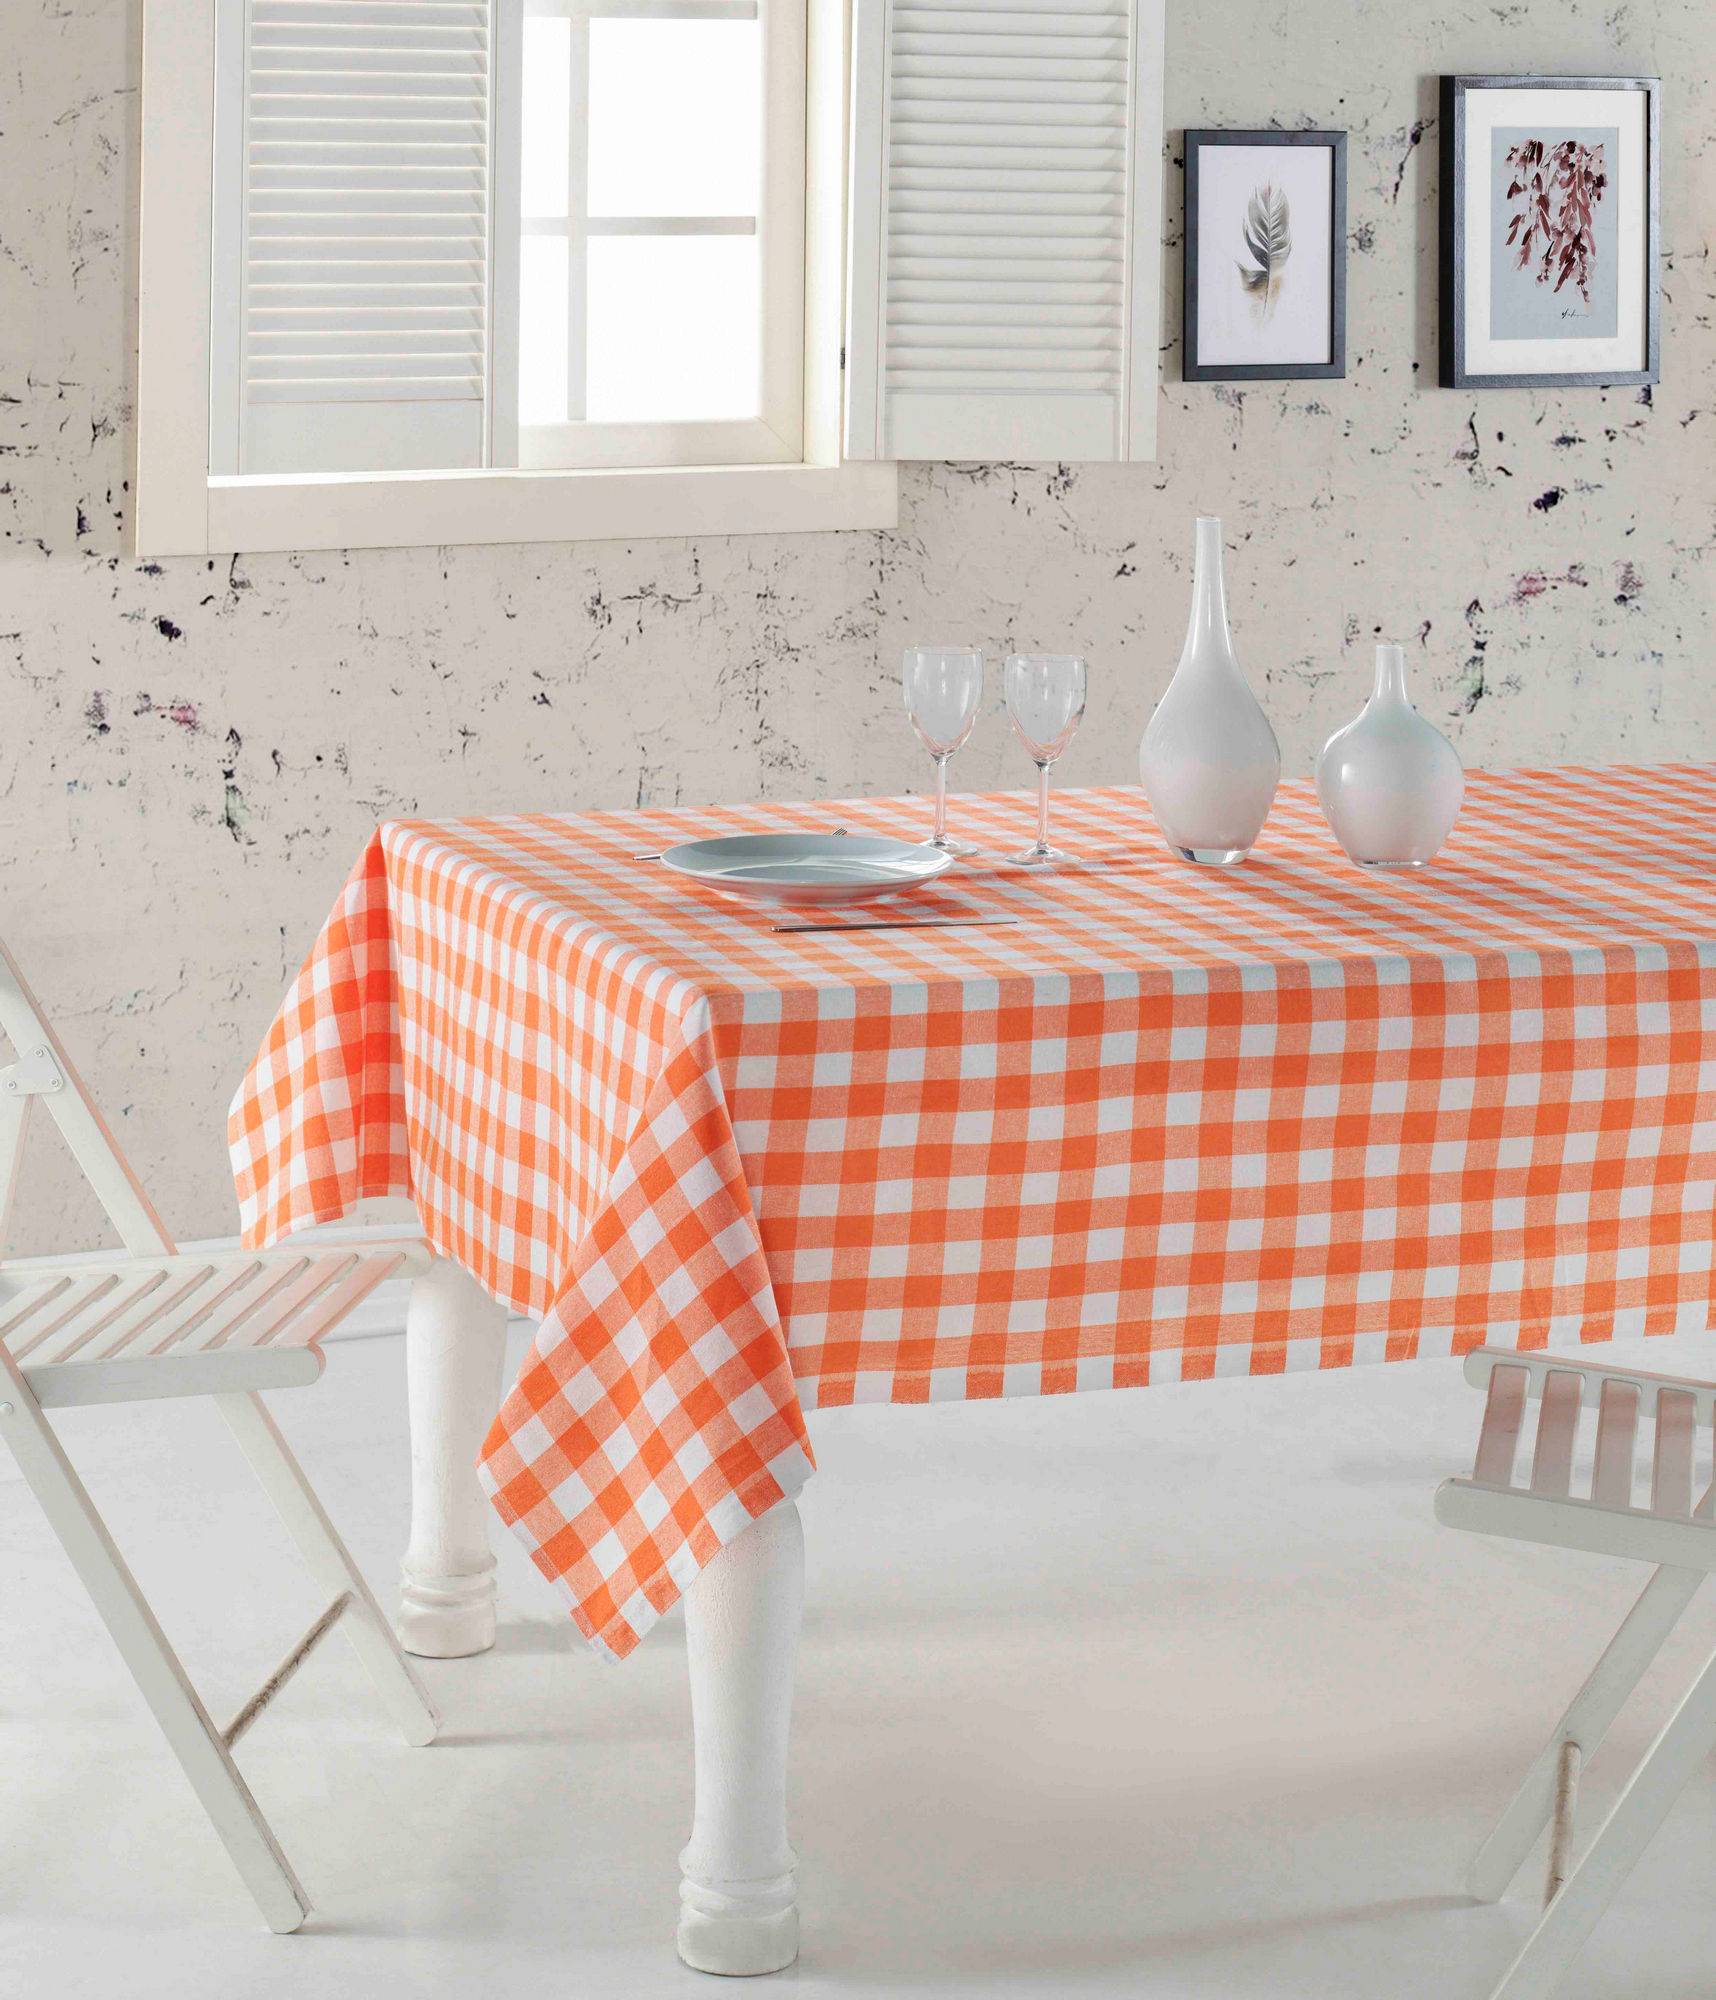 Brunier Tischdecke 160 x 220 cm Karomuster in Orange und Weiß